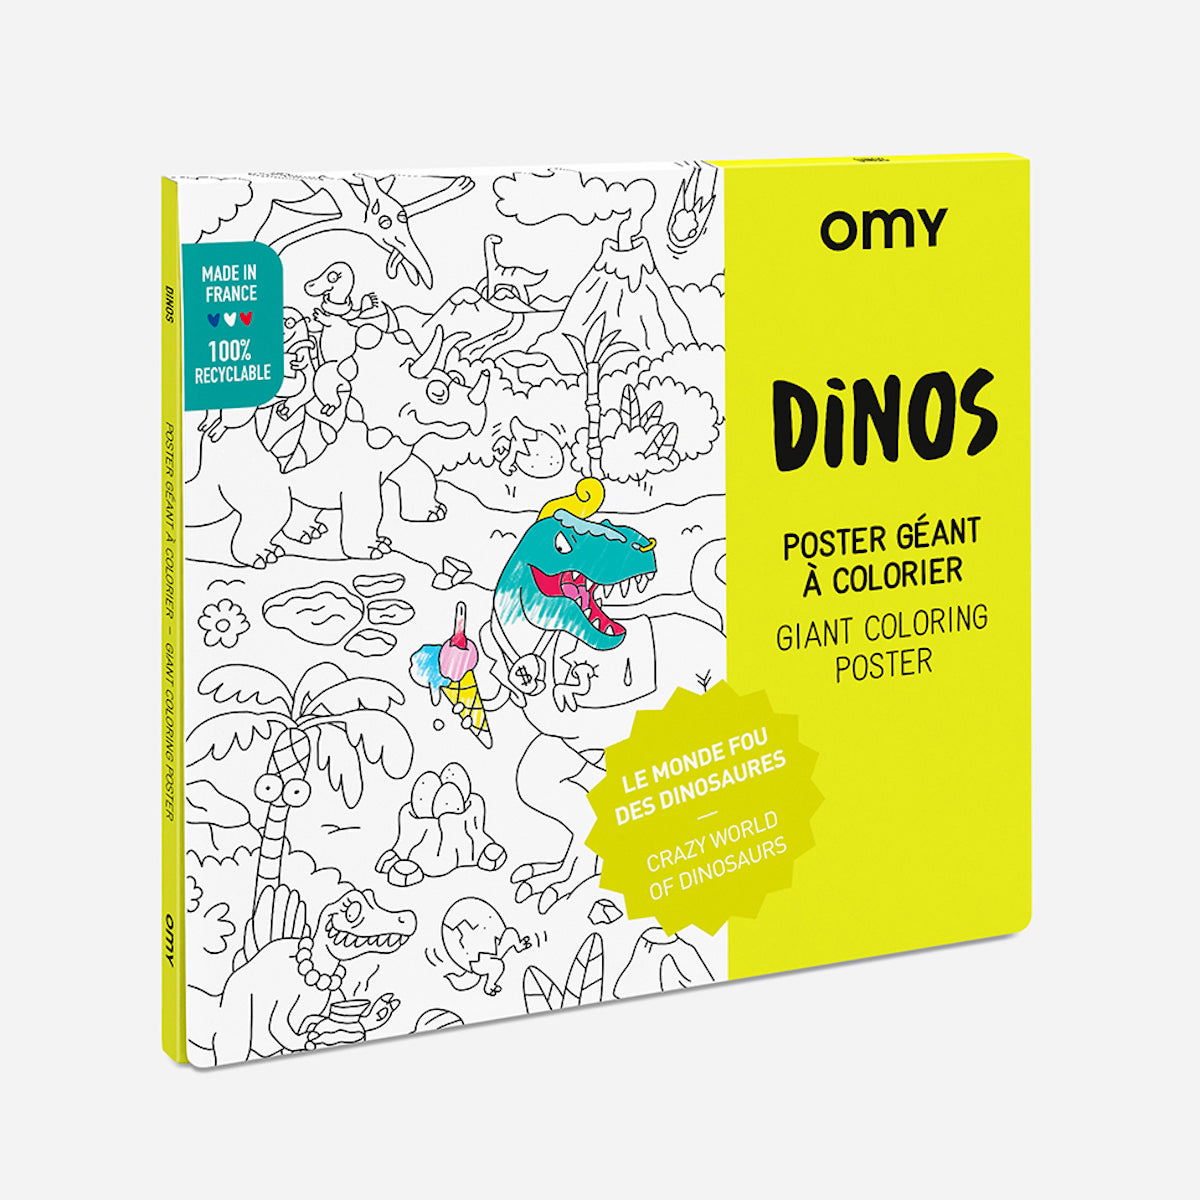 De OMY kleurposter 1 mtr Dinos zorgt voor heel veel uren kleurplezier. Deze grote themakleurplaat neemt je mee in de wondere wereld van dinosaurussen. Pak je favoriete viltstiften erbij en ga op avontuur! VanZus.